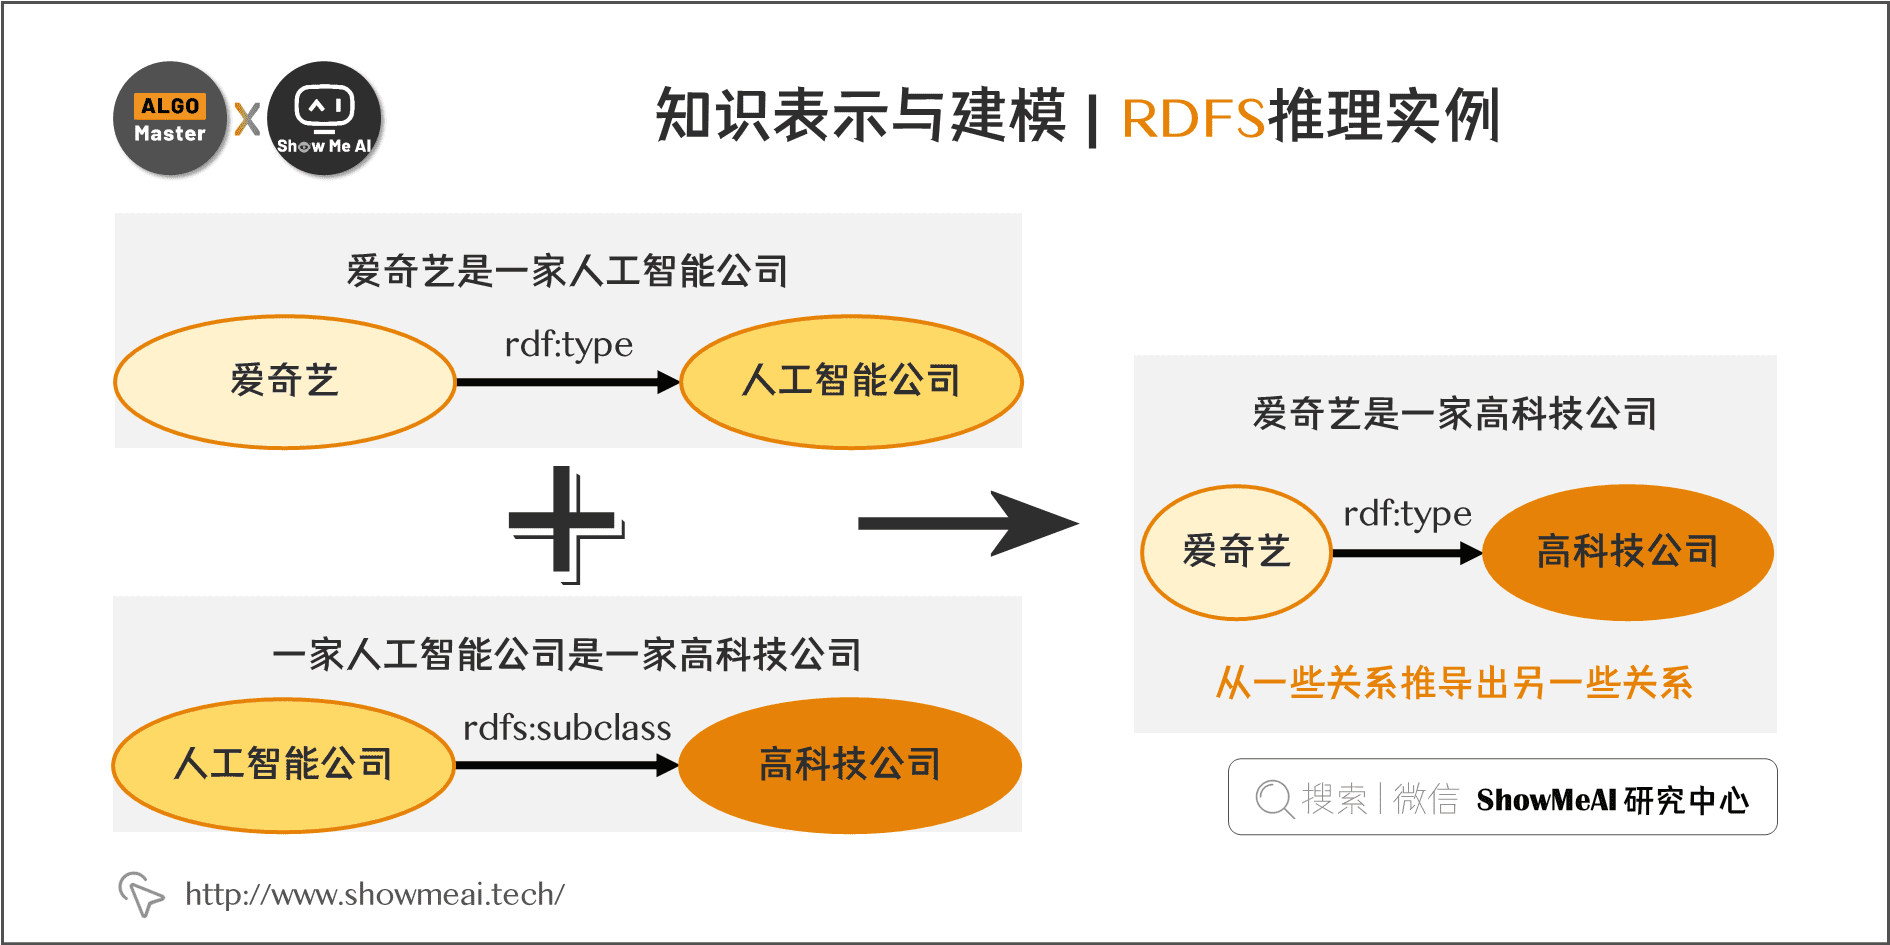 知识表示与建模 | RDFS推理实例; 7-10